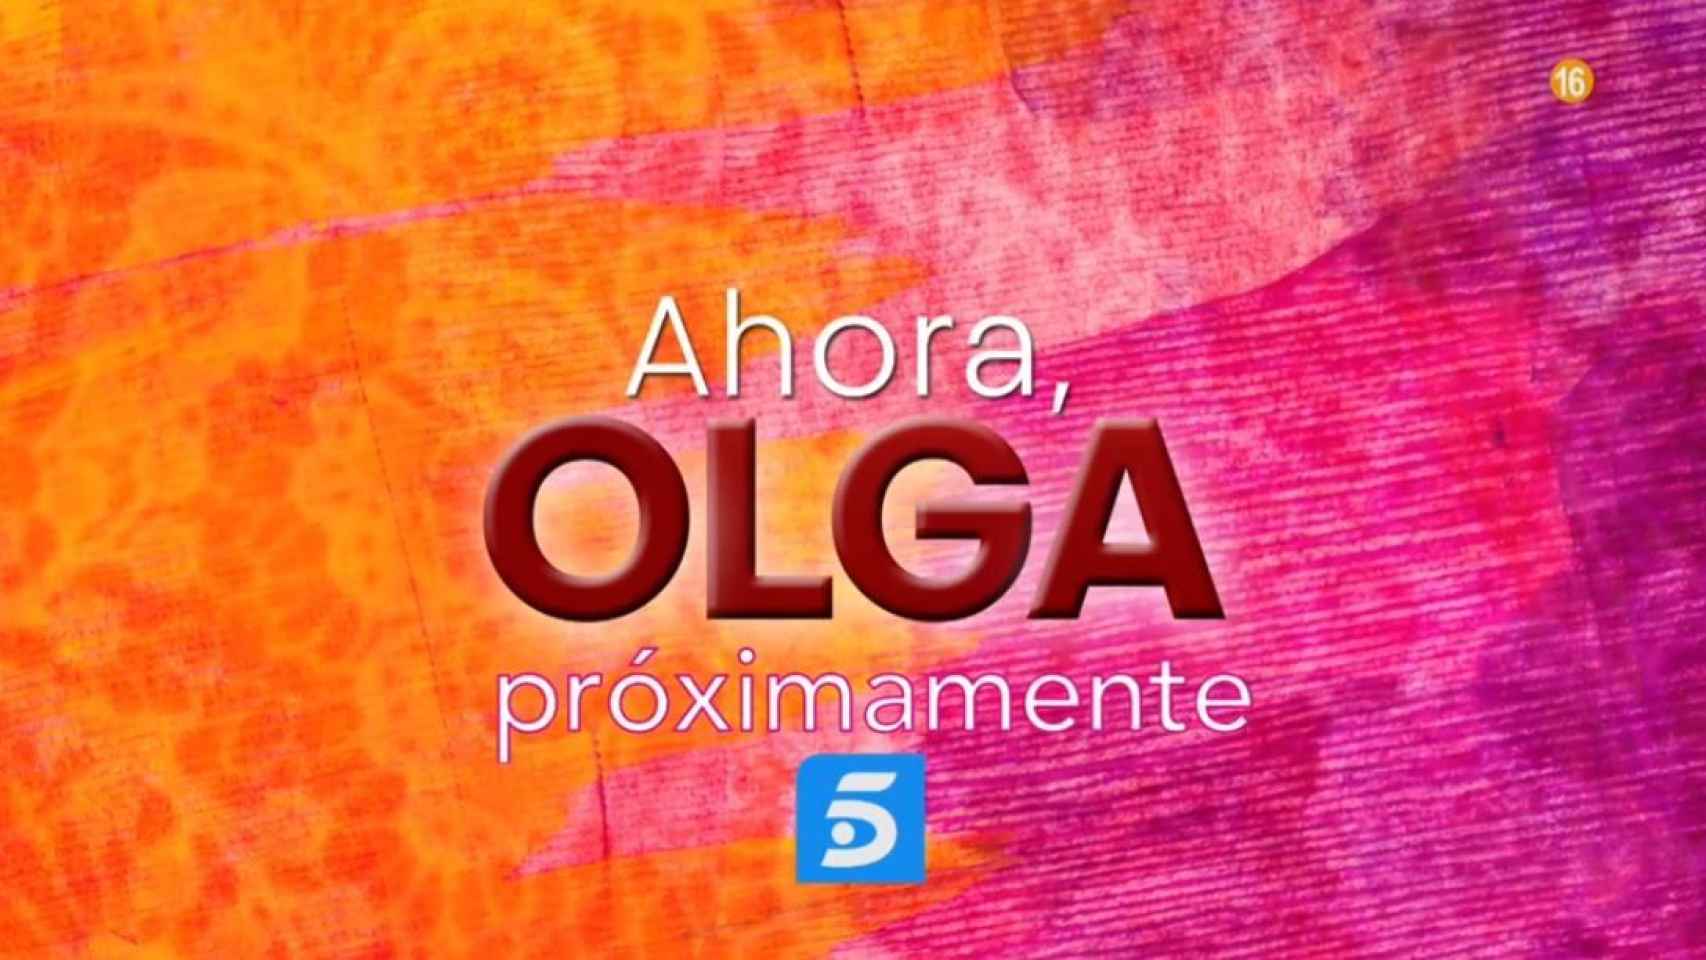 Imagen promocional de 'Ahora, Olga' en Telecinco.